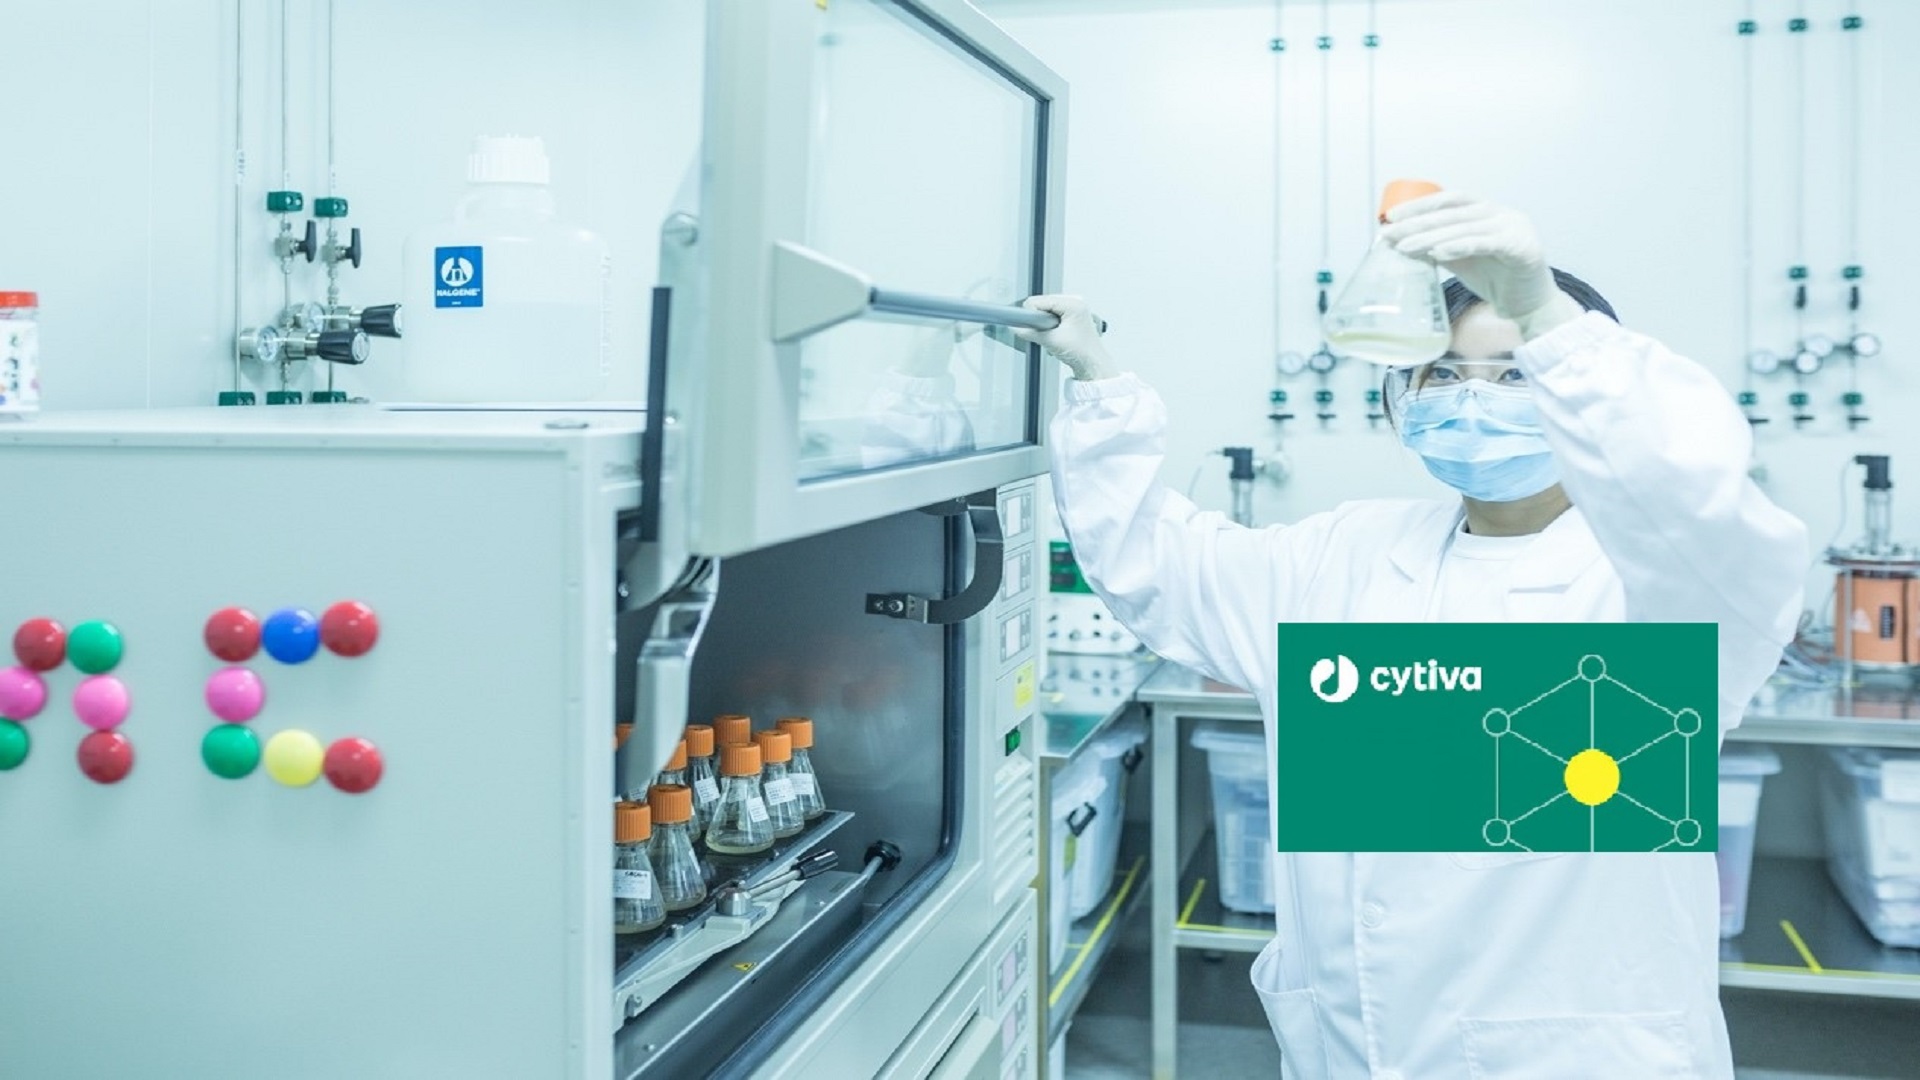 Φαρμακευτική επιχειρηματικότητα: Η Cytiva επενδύει 500 εκατ. σε νέες γραμμές παραγωγής